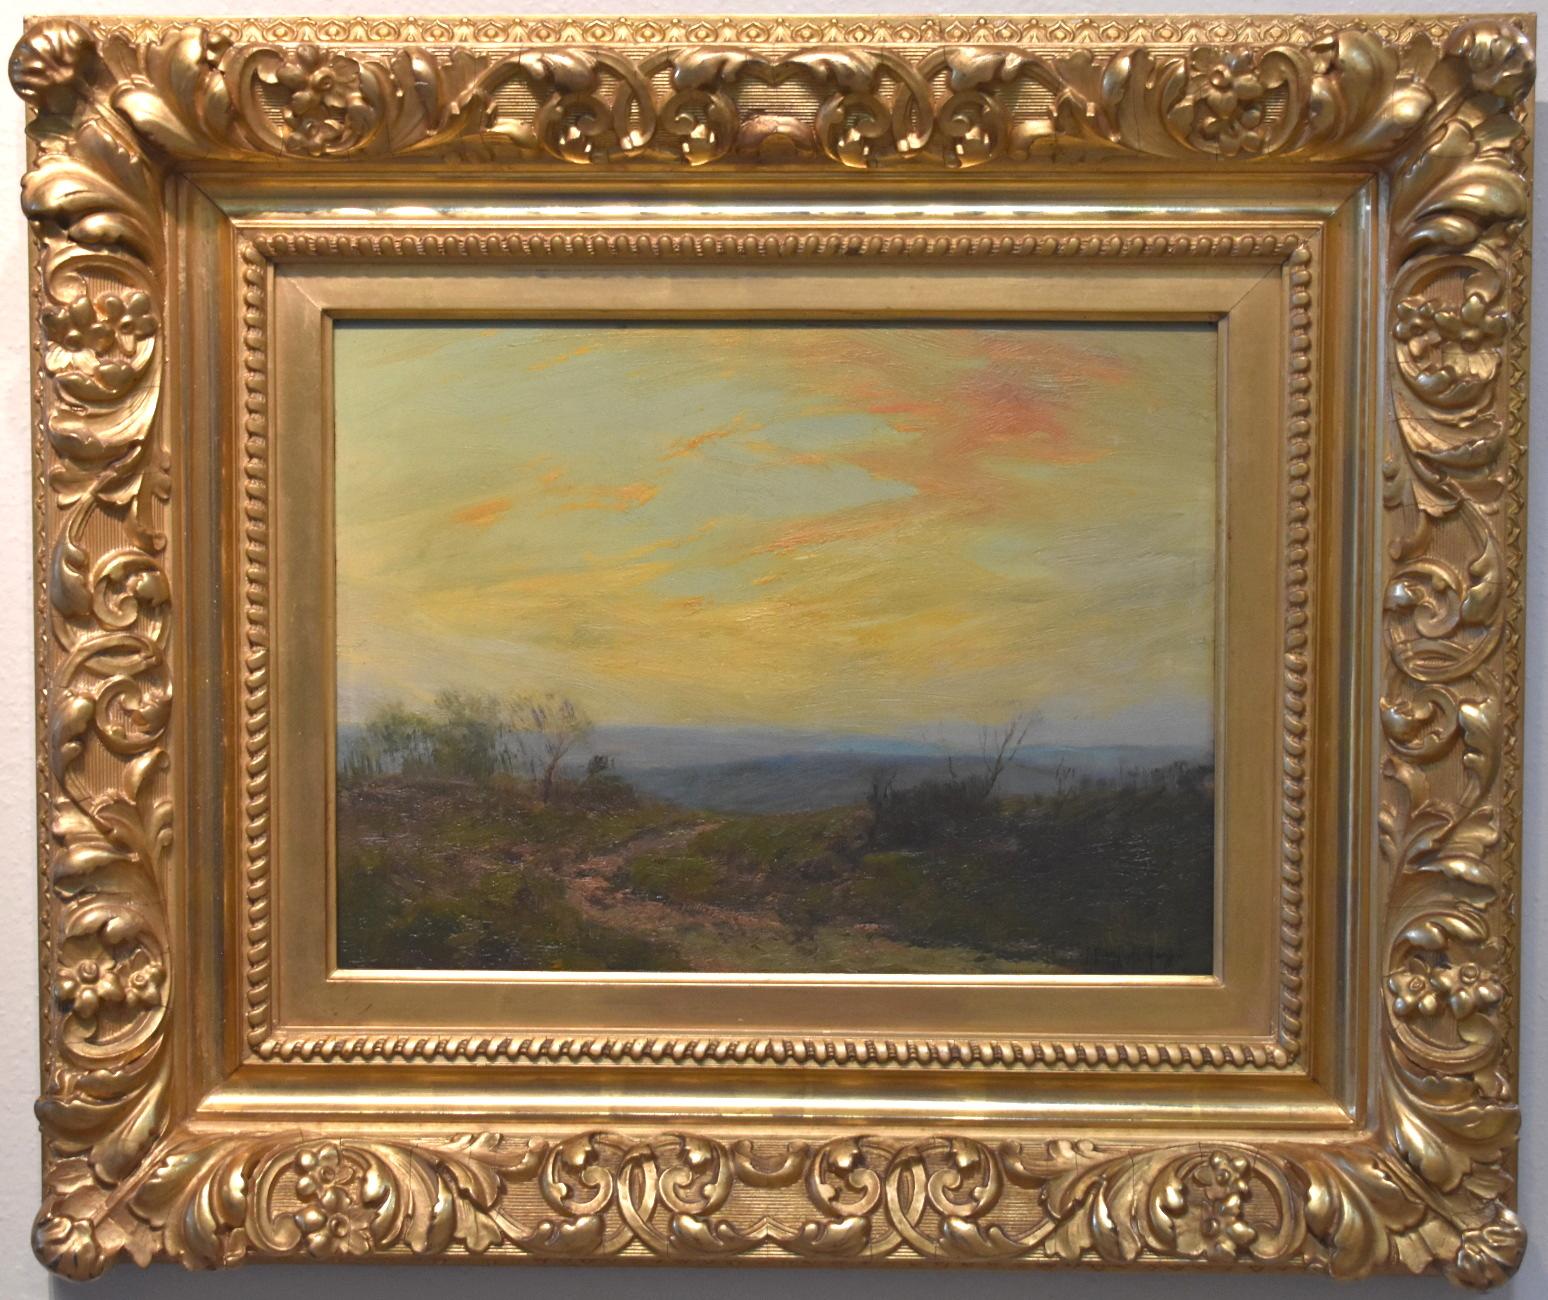 Landscape Painting Julian Onderdonk - "" Soirée d'été du Sud-Ouest du Texas ""   1909  Texas Hill Country - Country